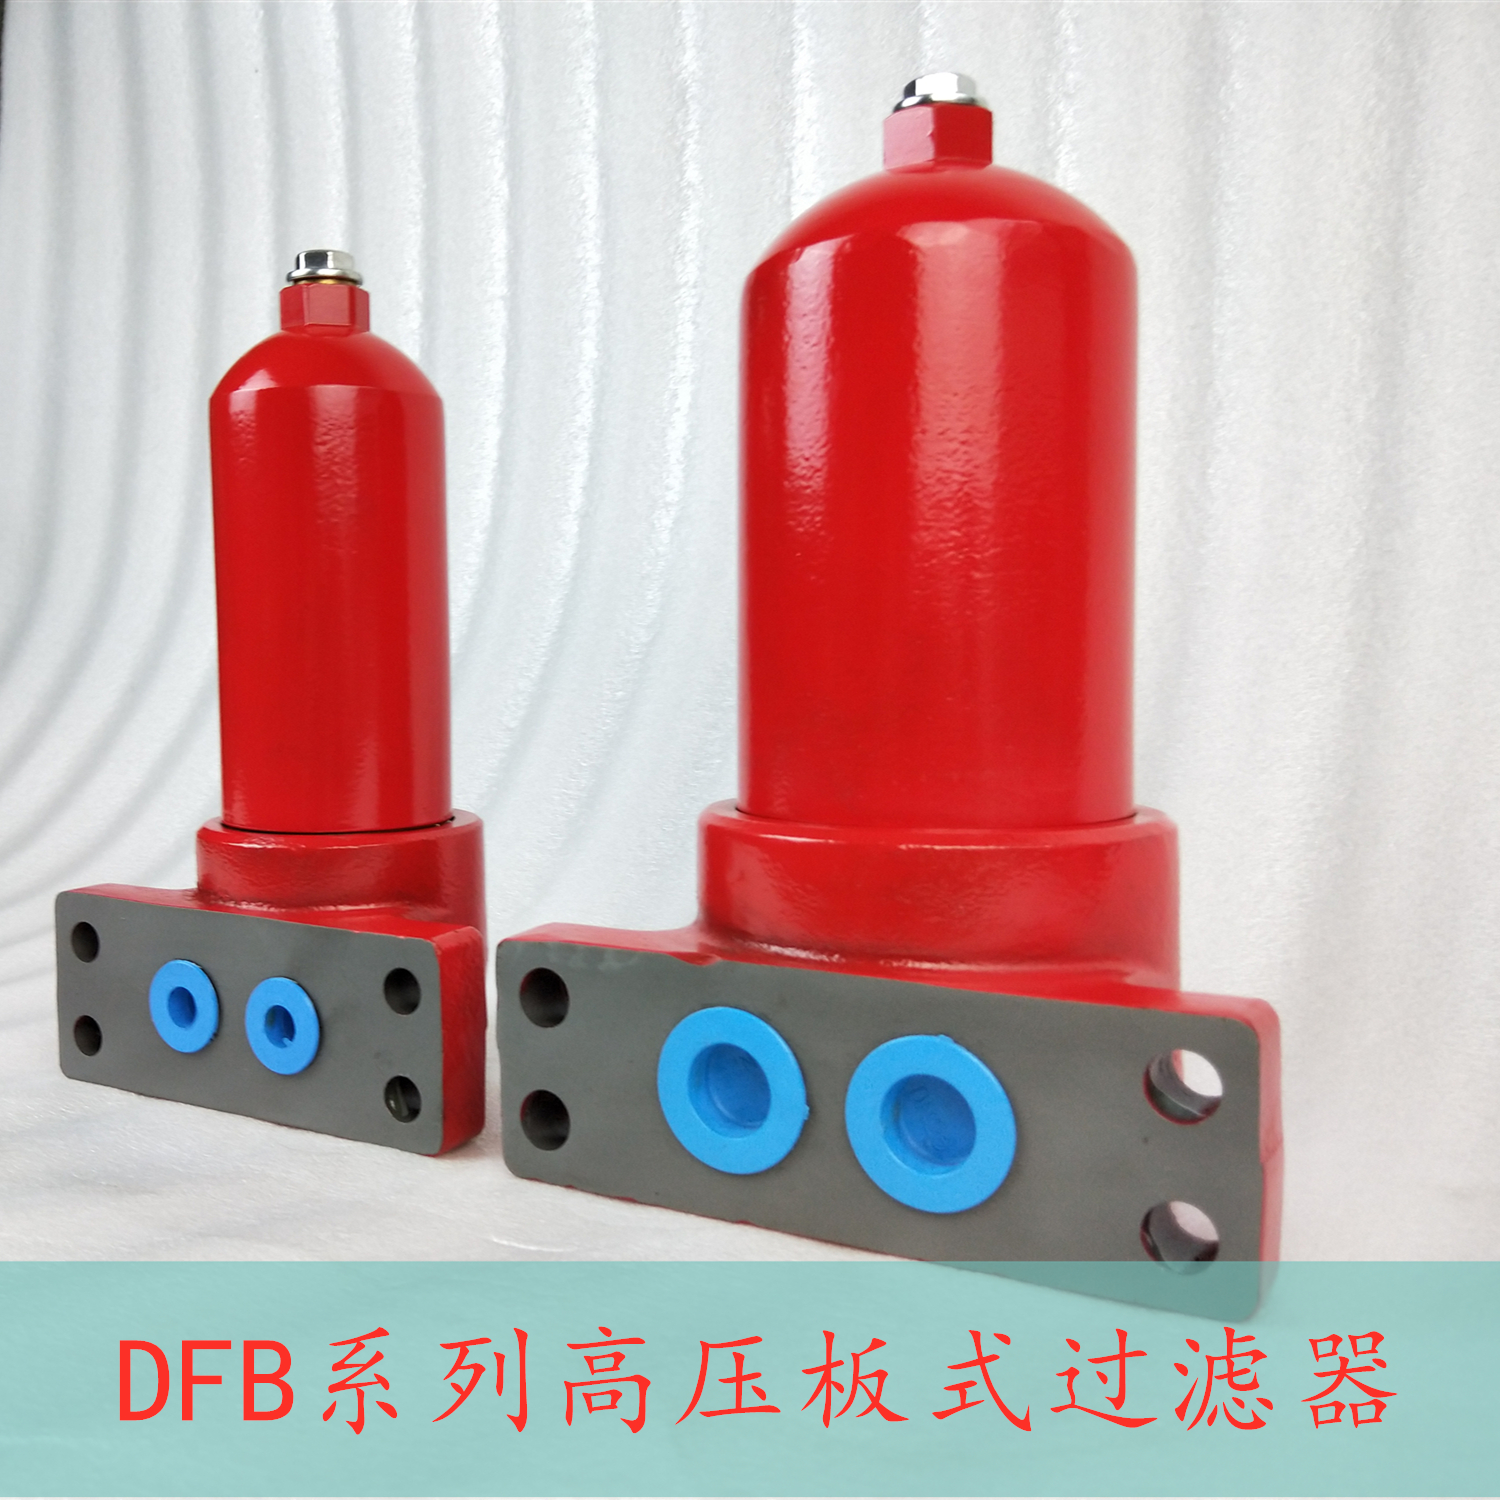 浙江温州DFB-H高压板式过滤器厂家定制销售价格 量大从优图片